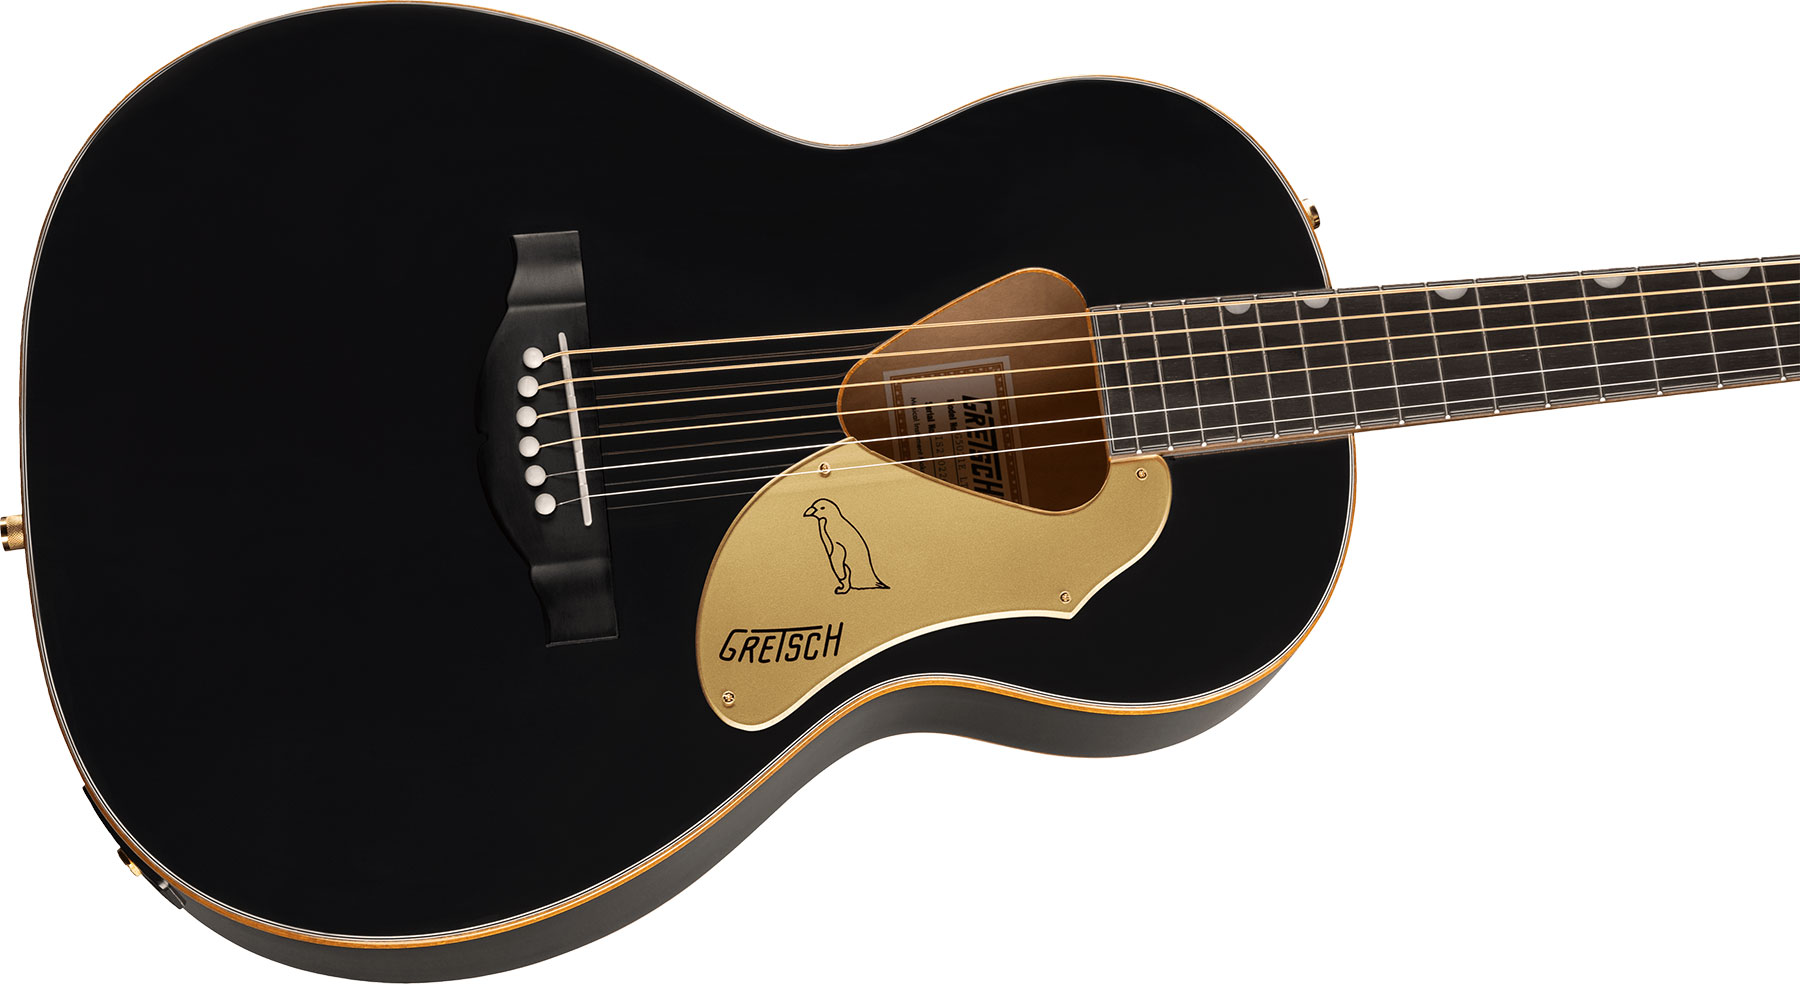 Gretsch G5021e Rancher Penguin Parlor Epicea Erable Lau - Black - Electro acoustic guitar - Variation 2